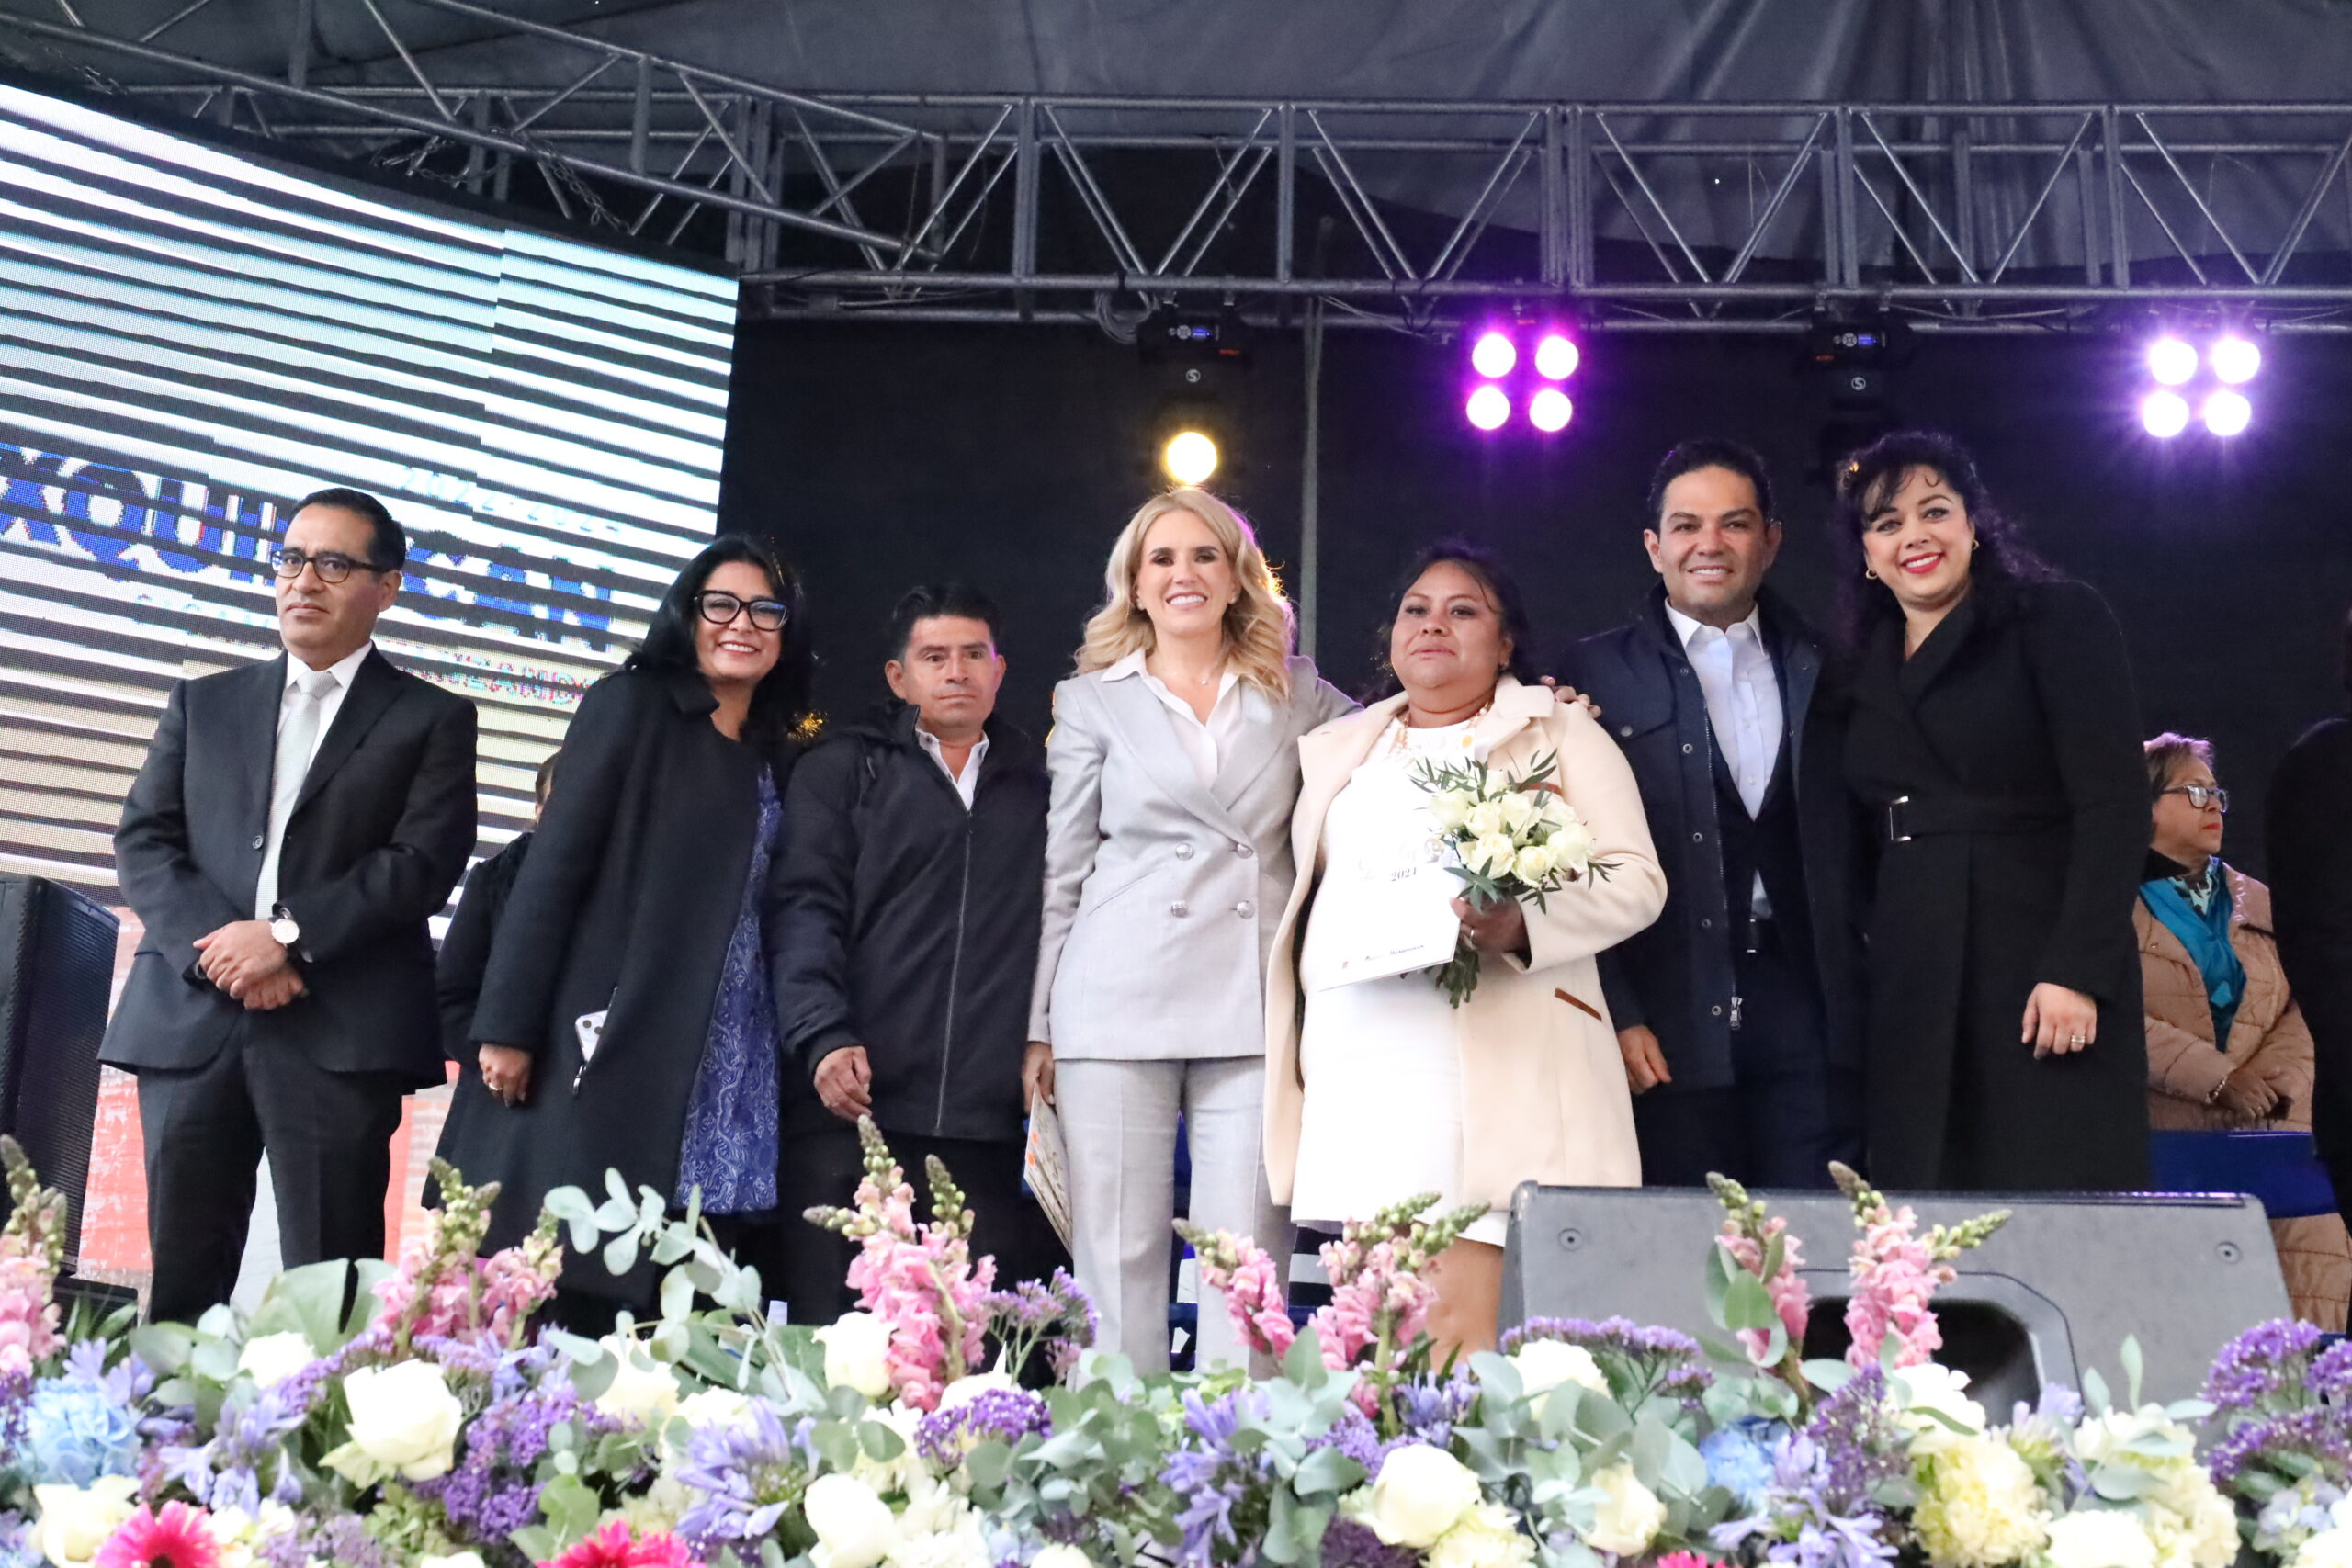 Unión en valores coincidieron en recomendar Romina Contreras y Enrique Vargas a 250 parejas que apadrinaron en su boda